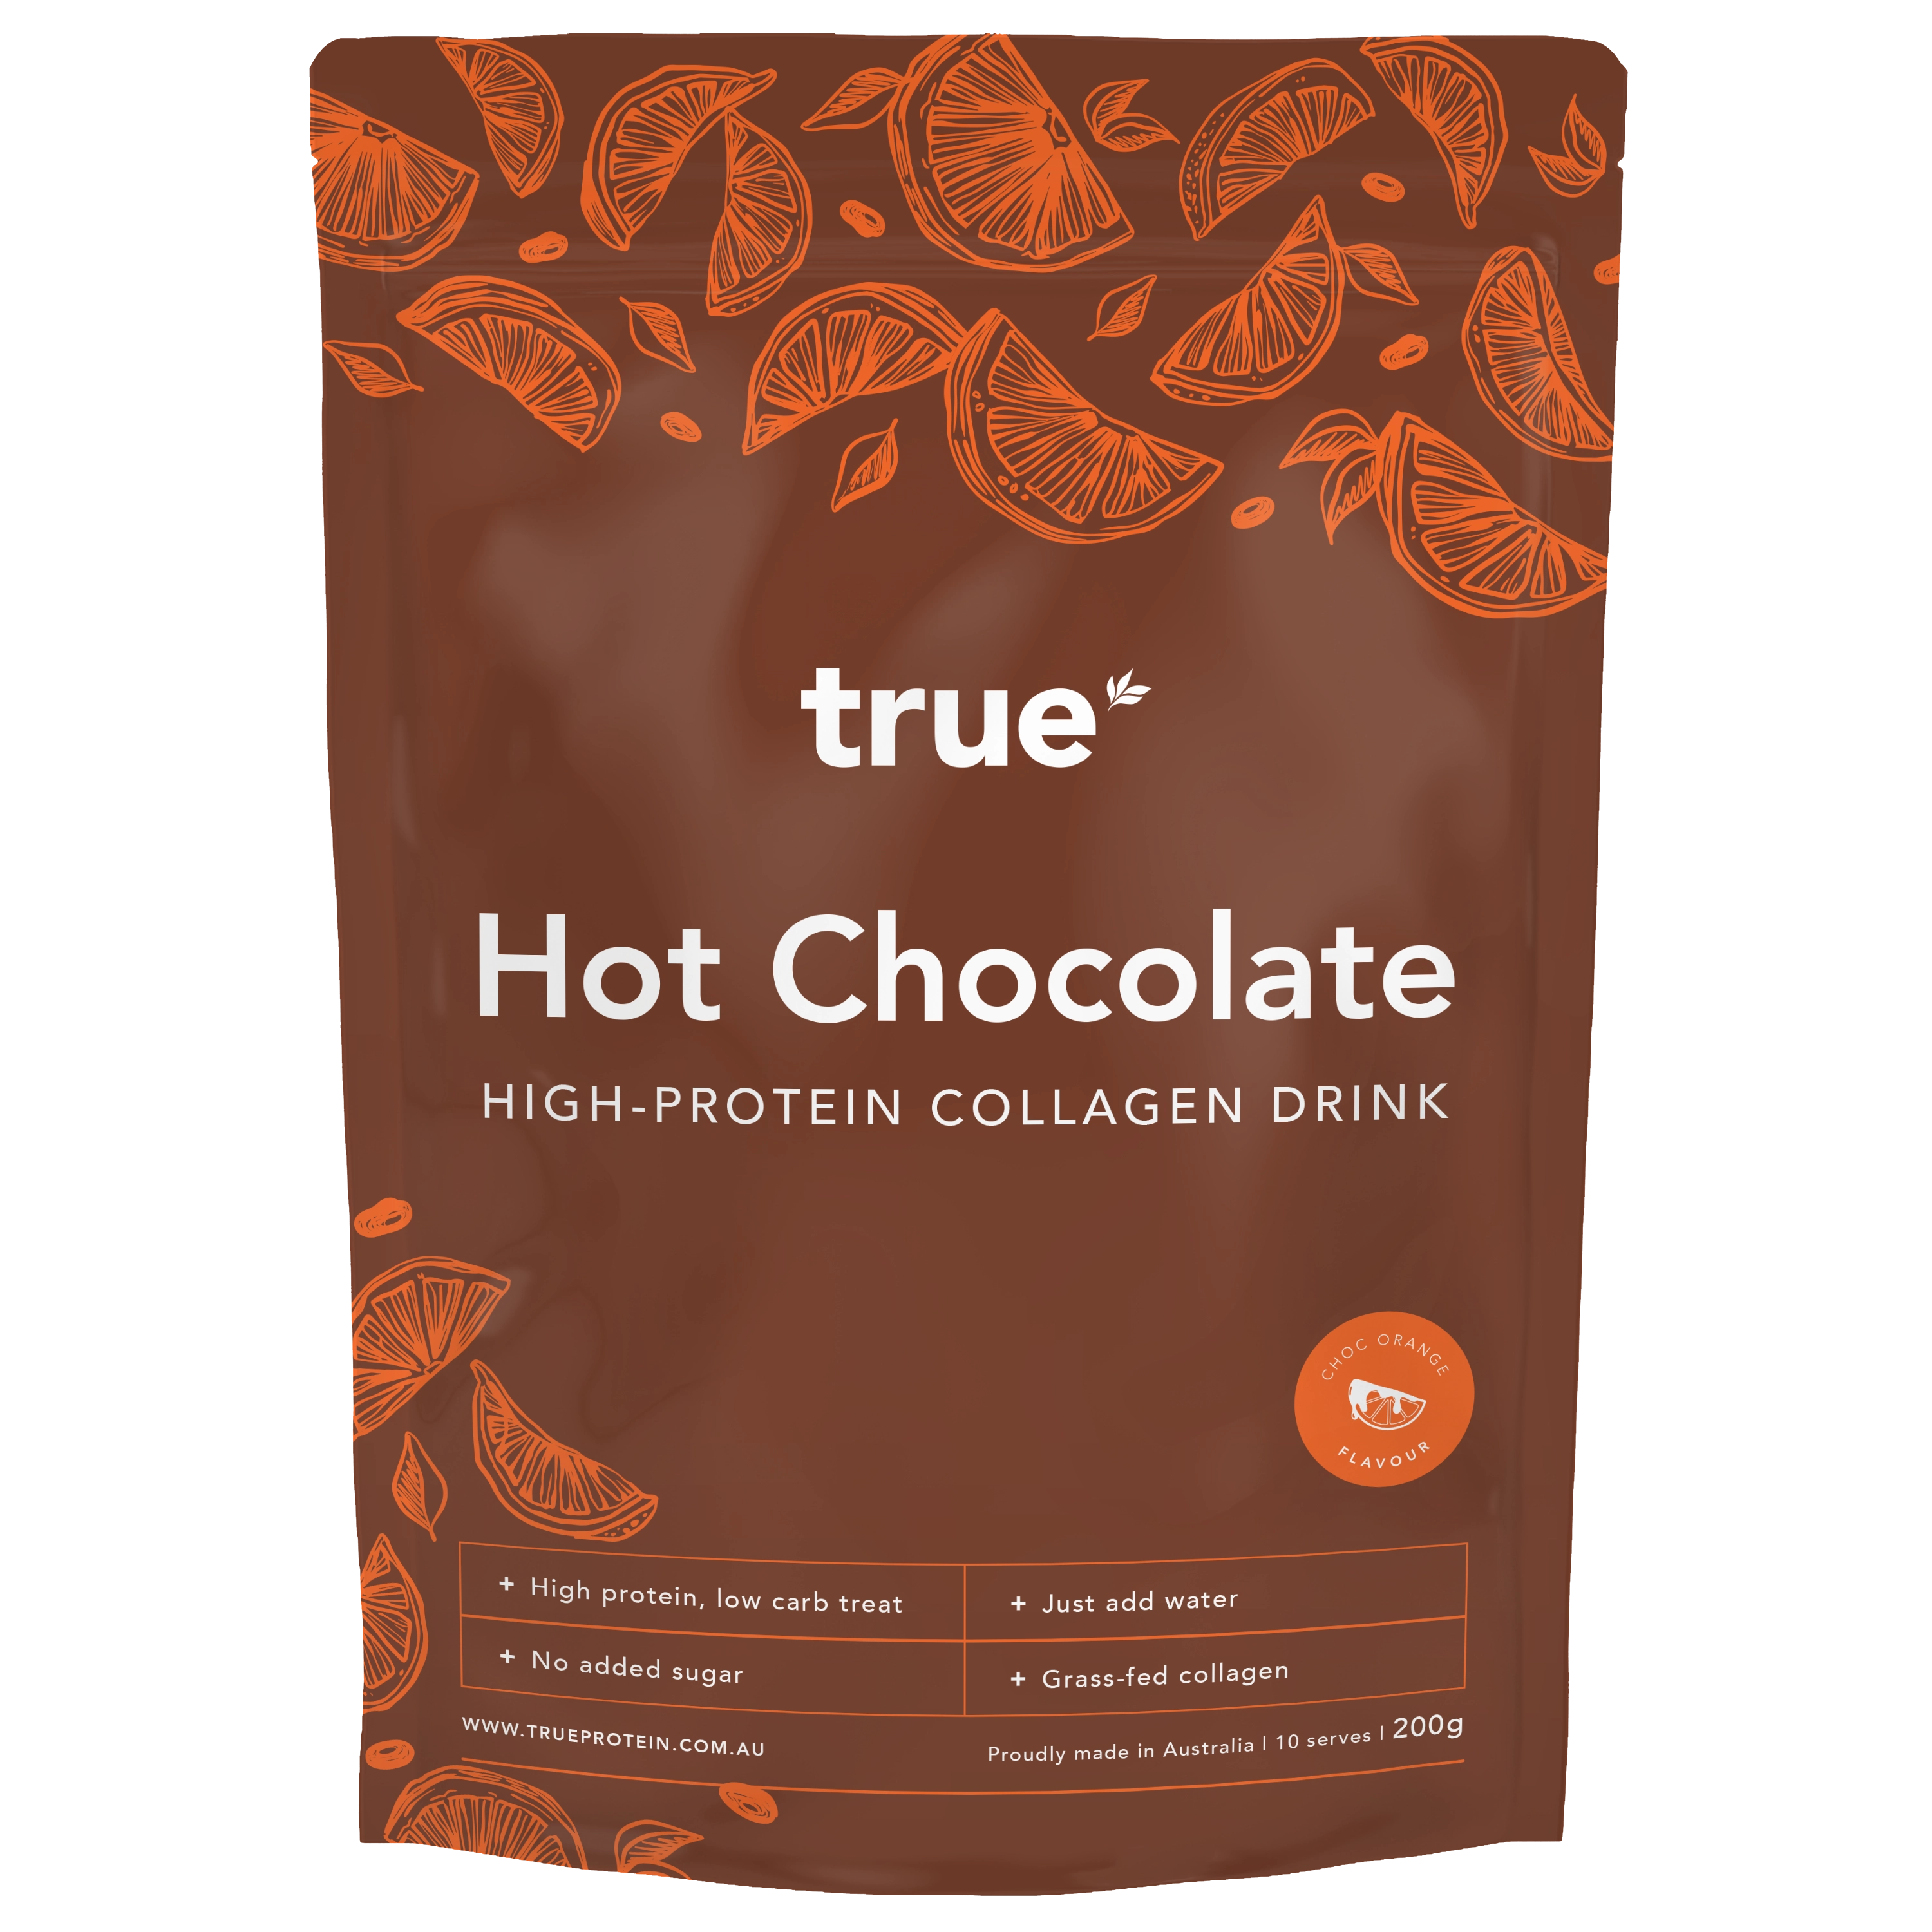 Protein　Powder　True　Chocolate　True　Hot　Chocolate　Hot　Protein